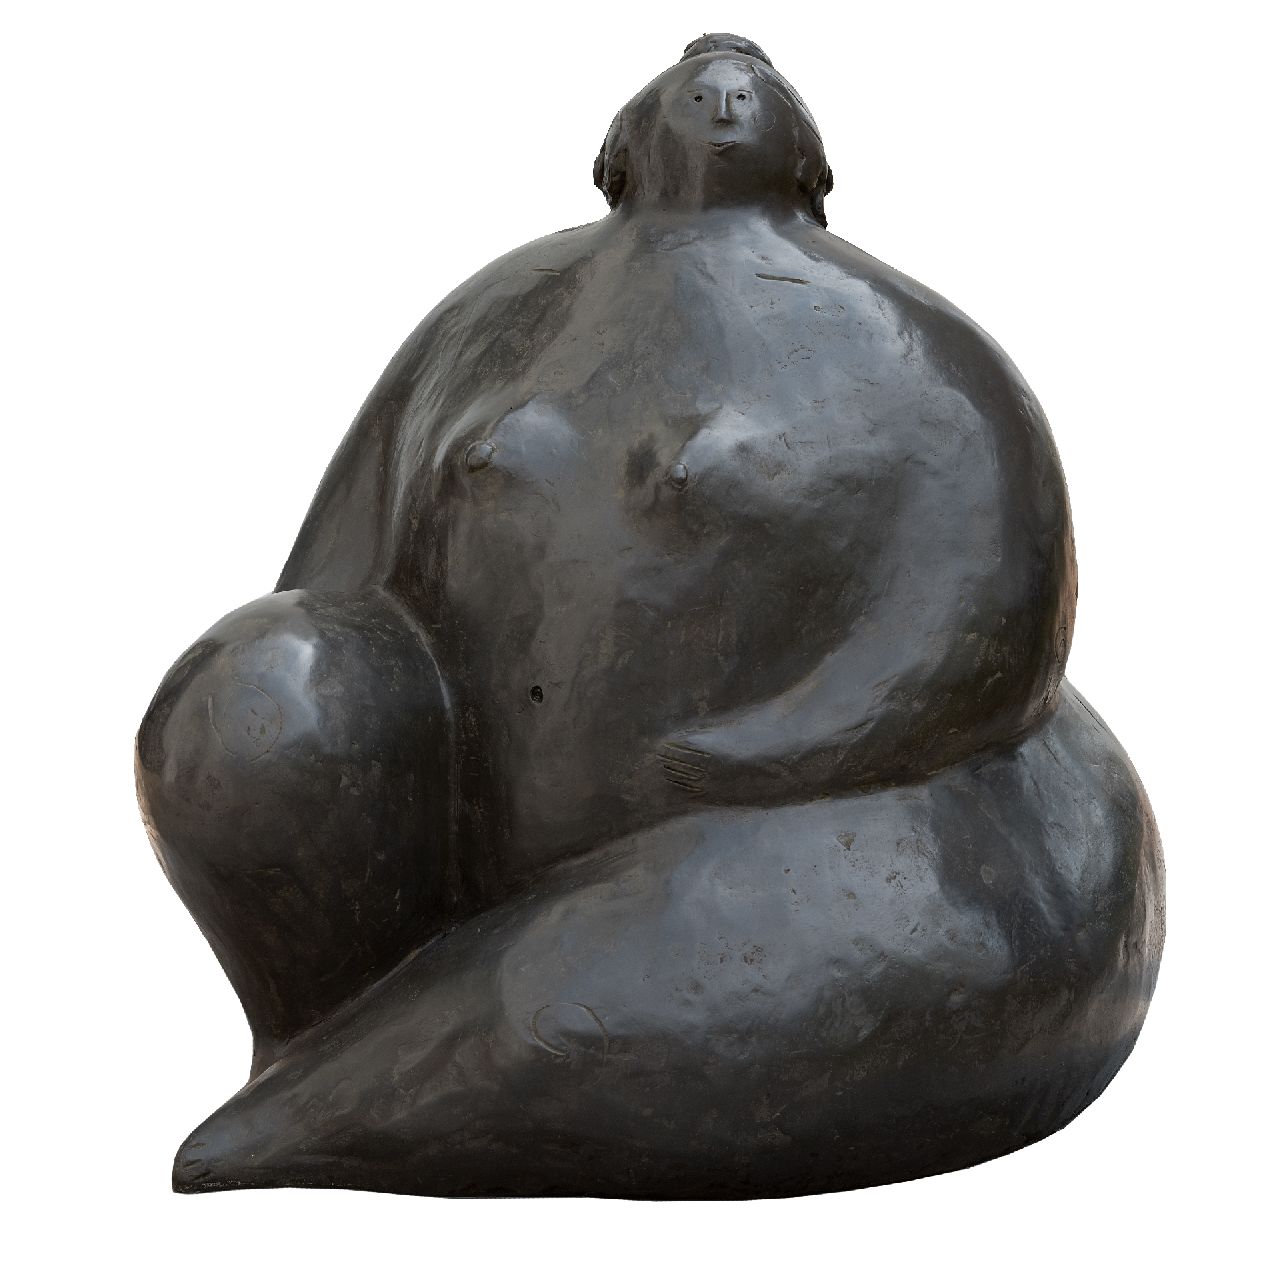 Hemert E. van | Evert van Hemert, Saskia, gepatineerd brons 65,0 x 55,0 cm, gesigneerd met monogram op zijkant